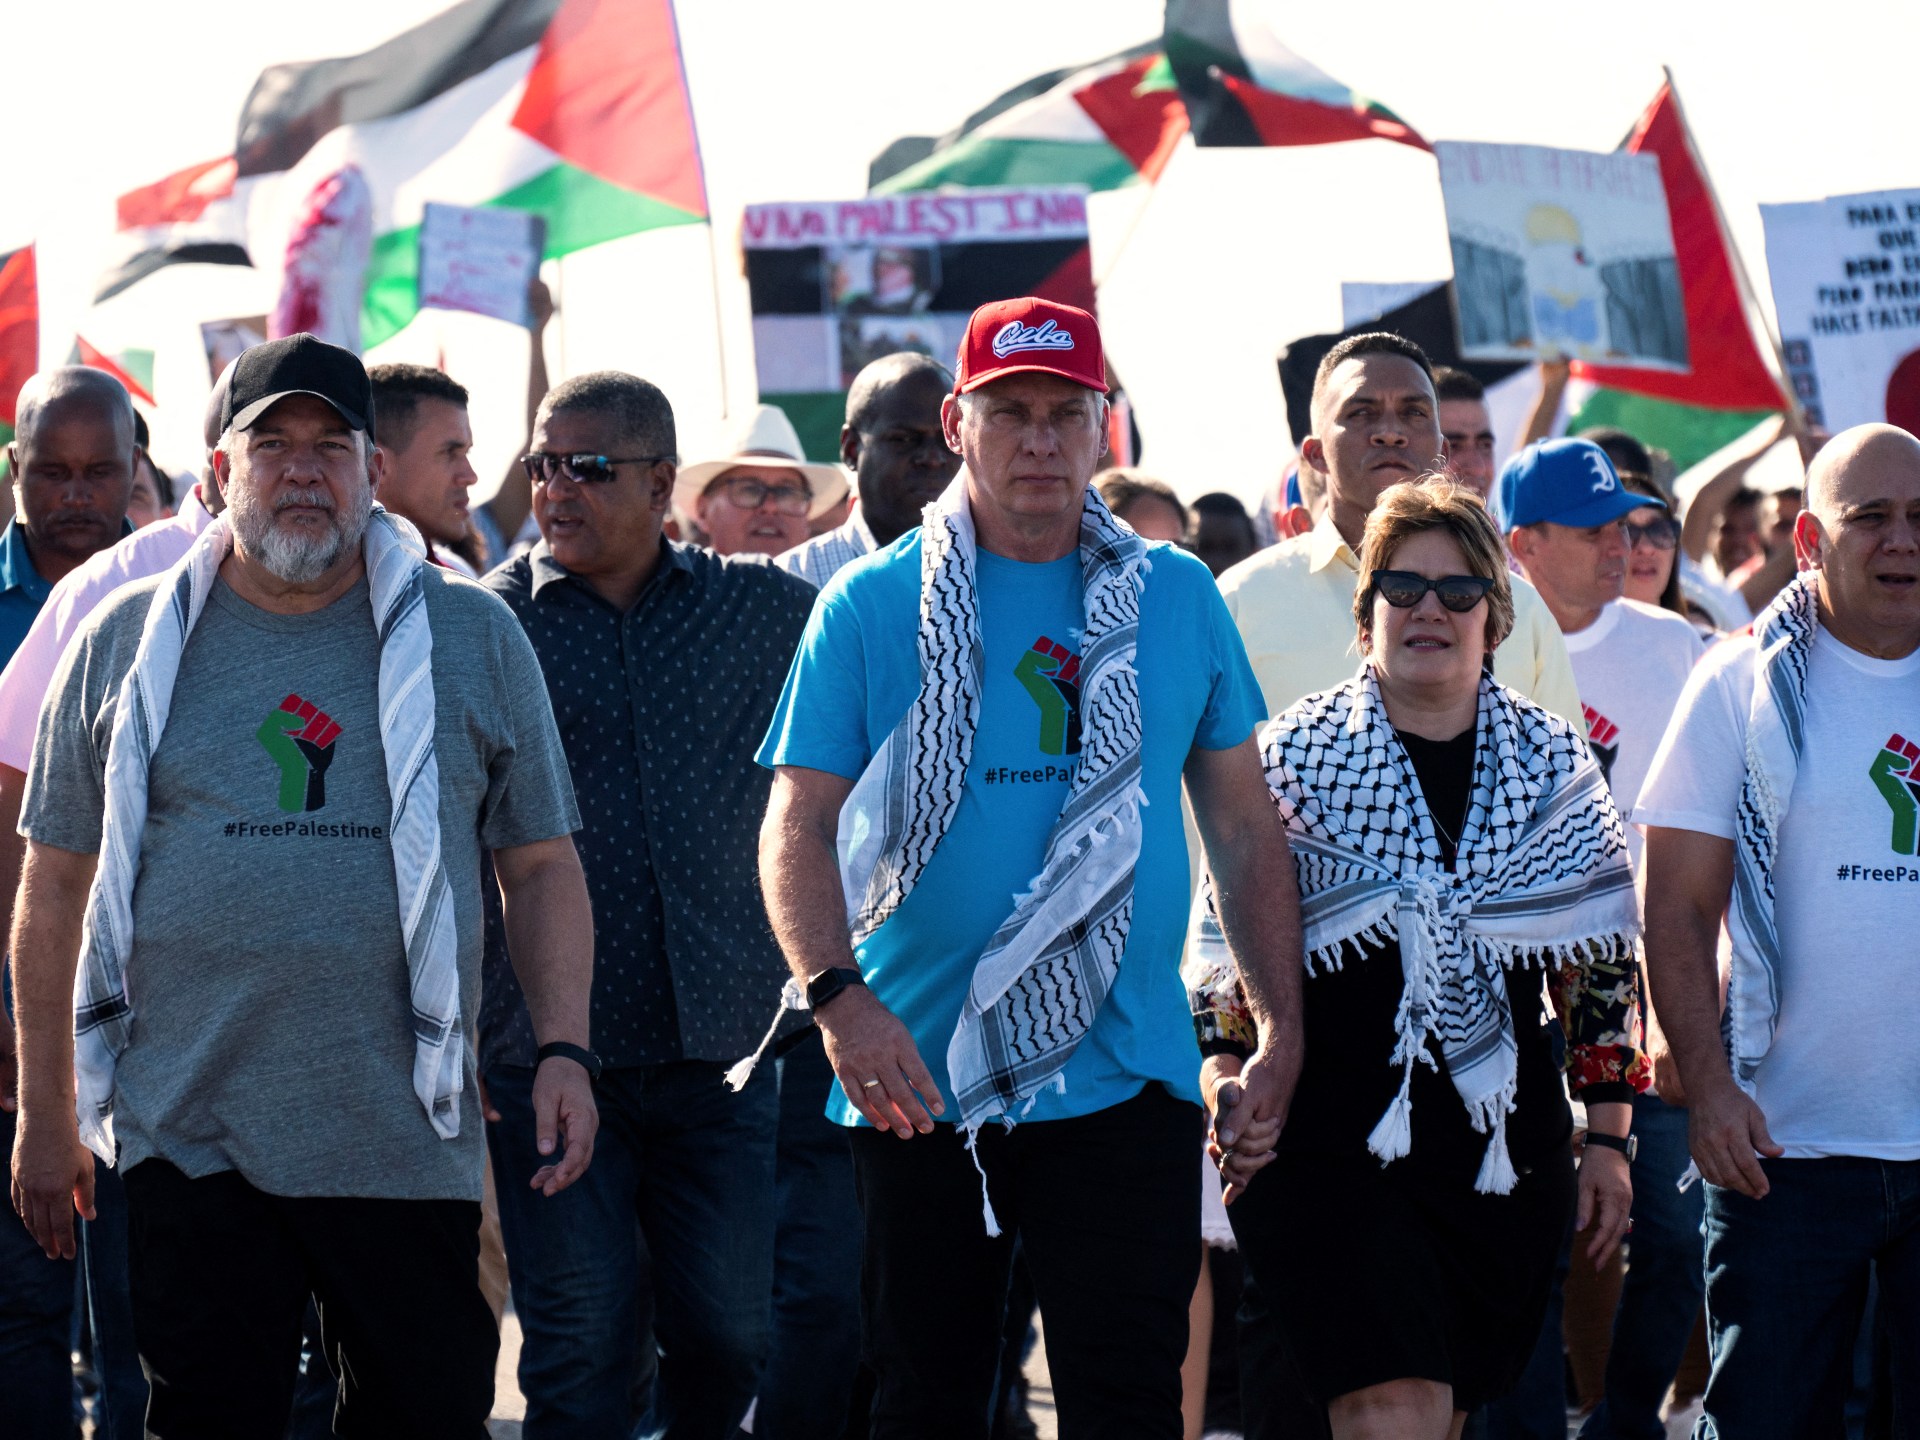 رئيس كوبا يقود مسيرة للتضامن مع فلسطين أمام السفارة الأميركية | أخبار – البوكس نيوز